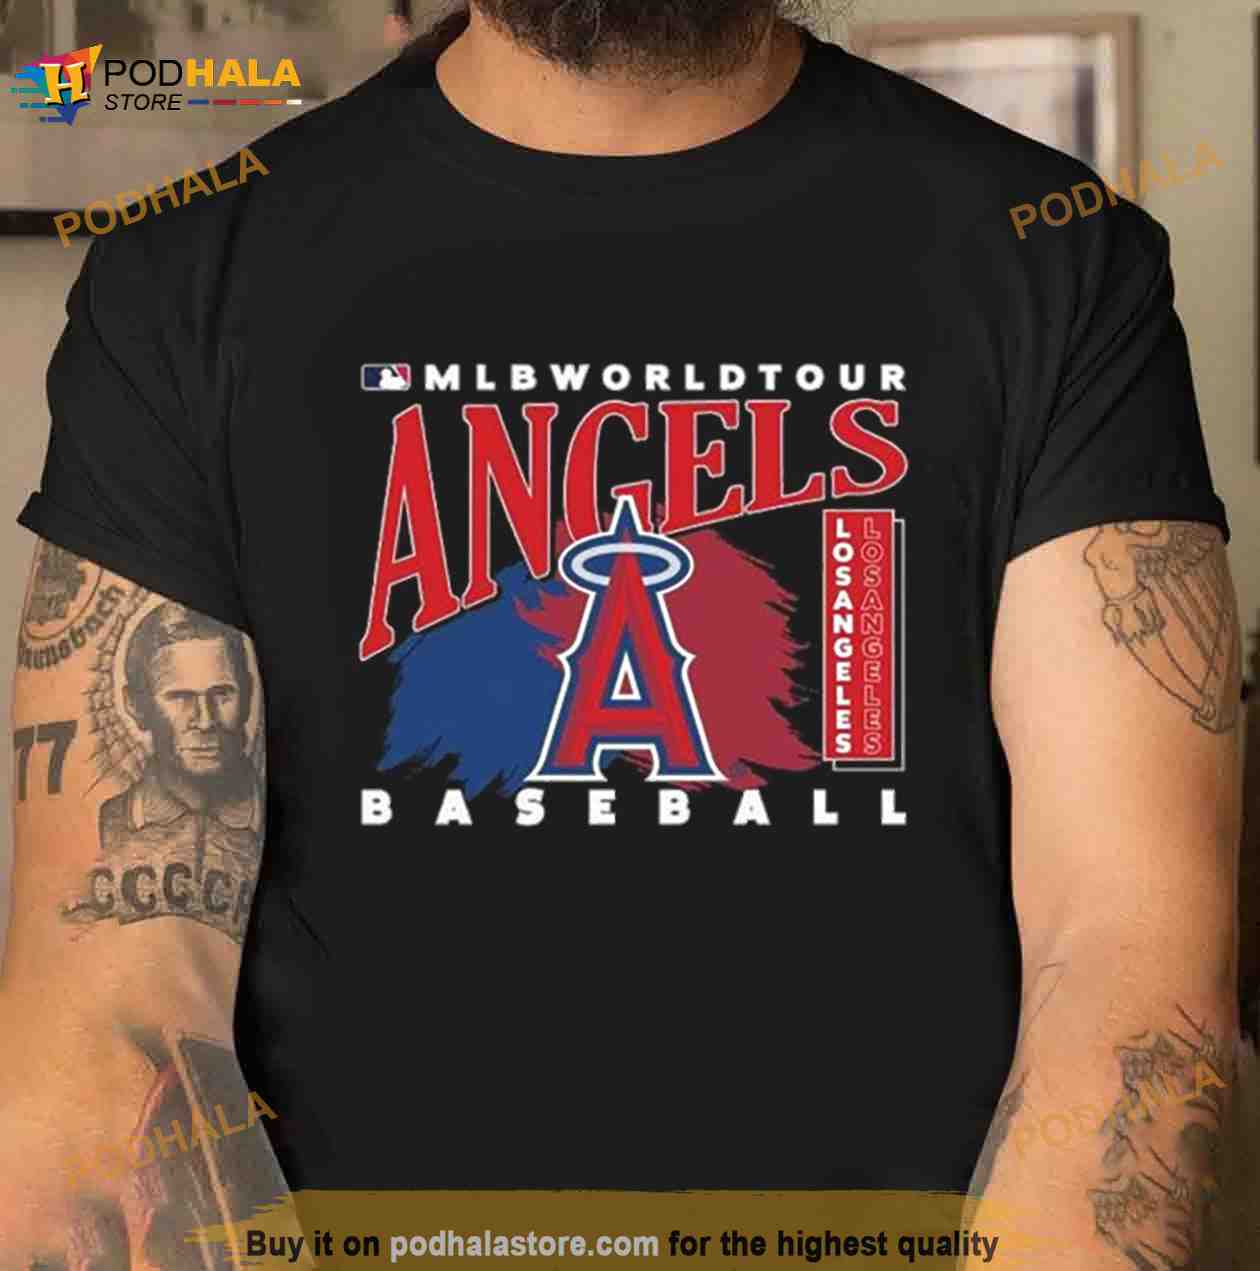 la angels shirt